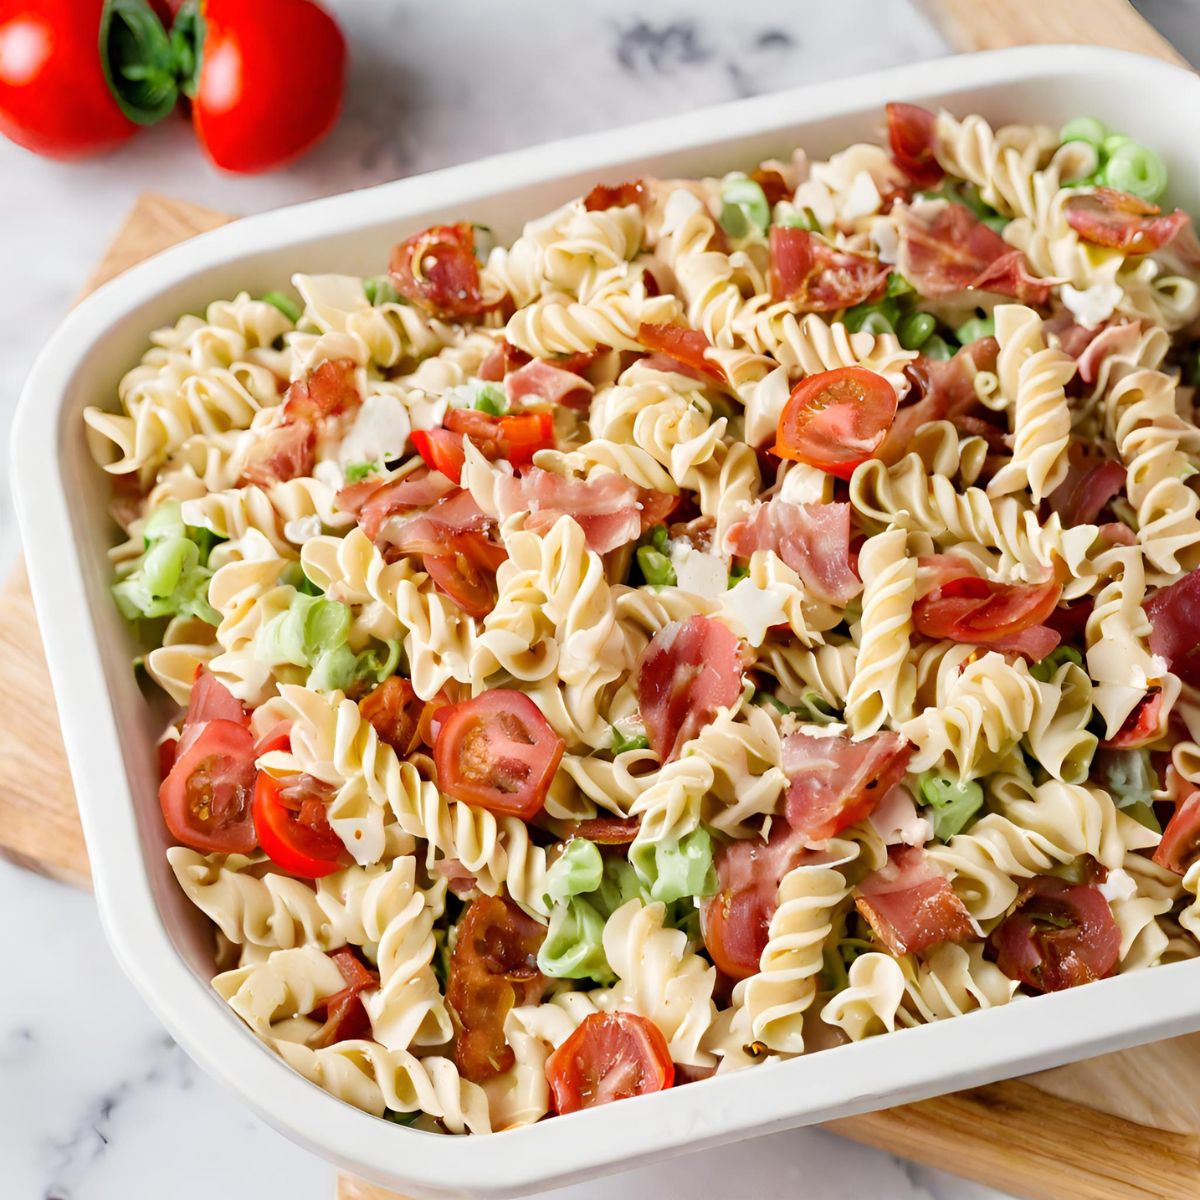 BLT Pasta Salad Recipe “Simple, Flavorful Dish”